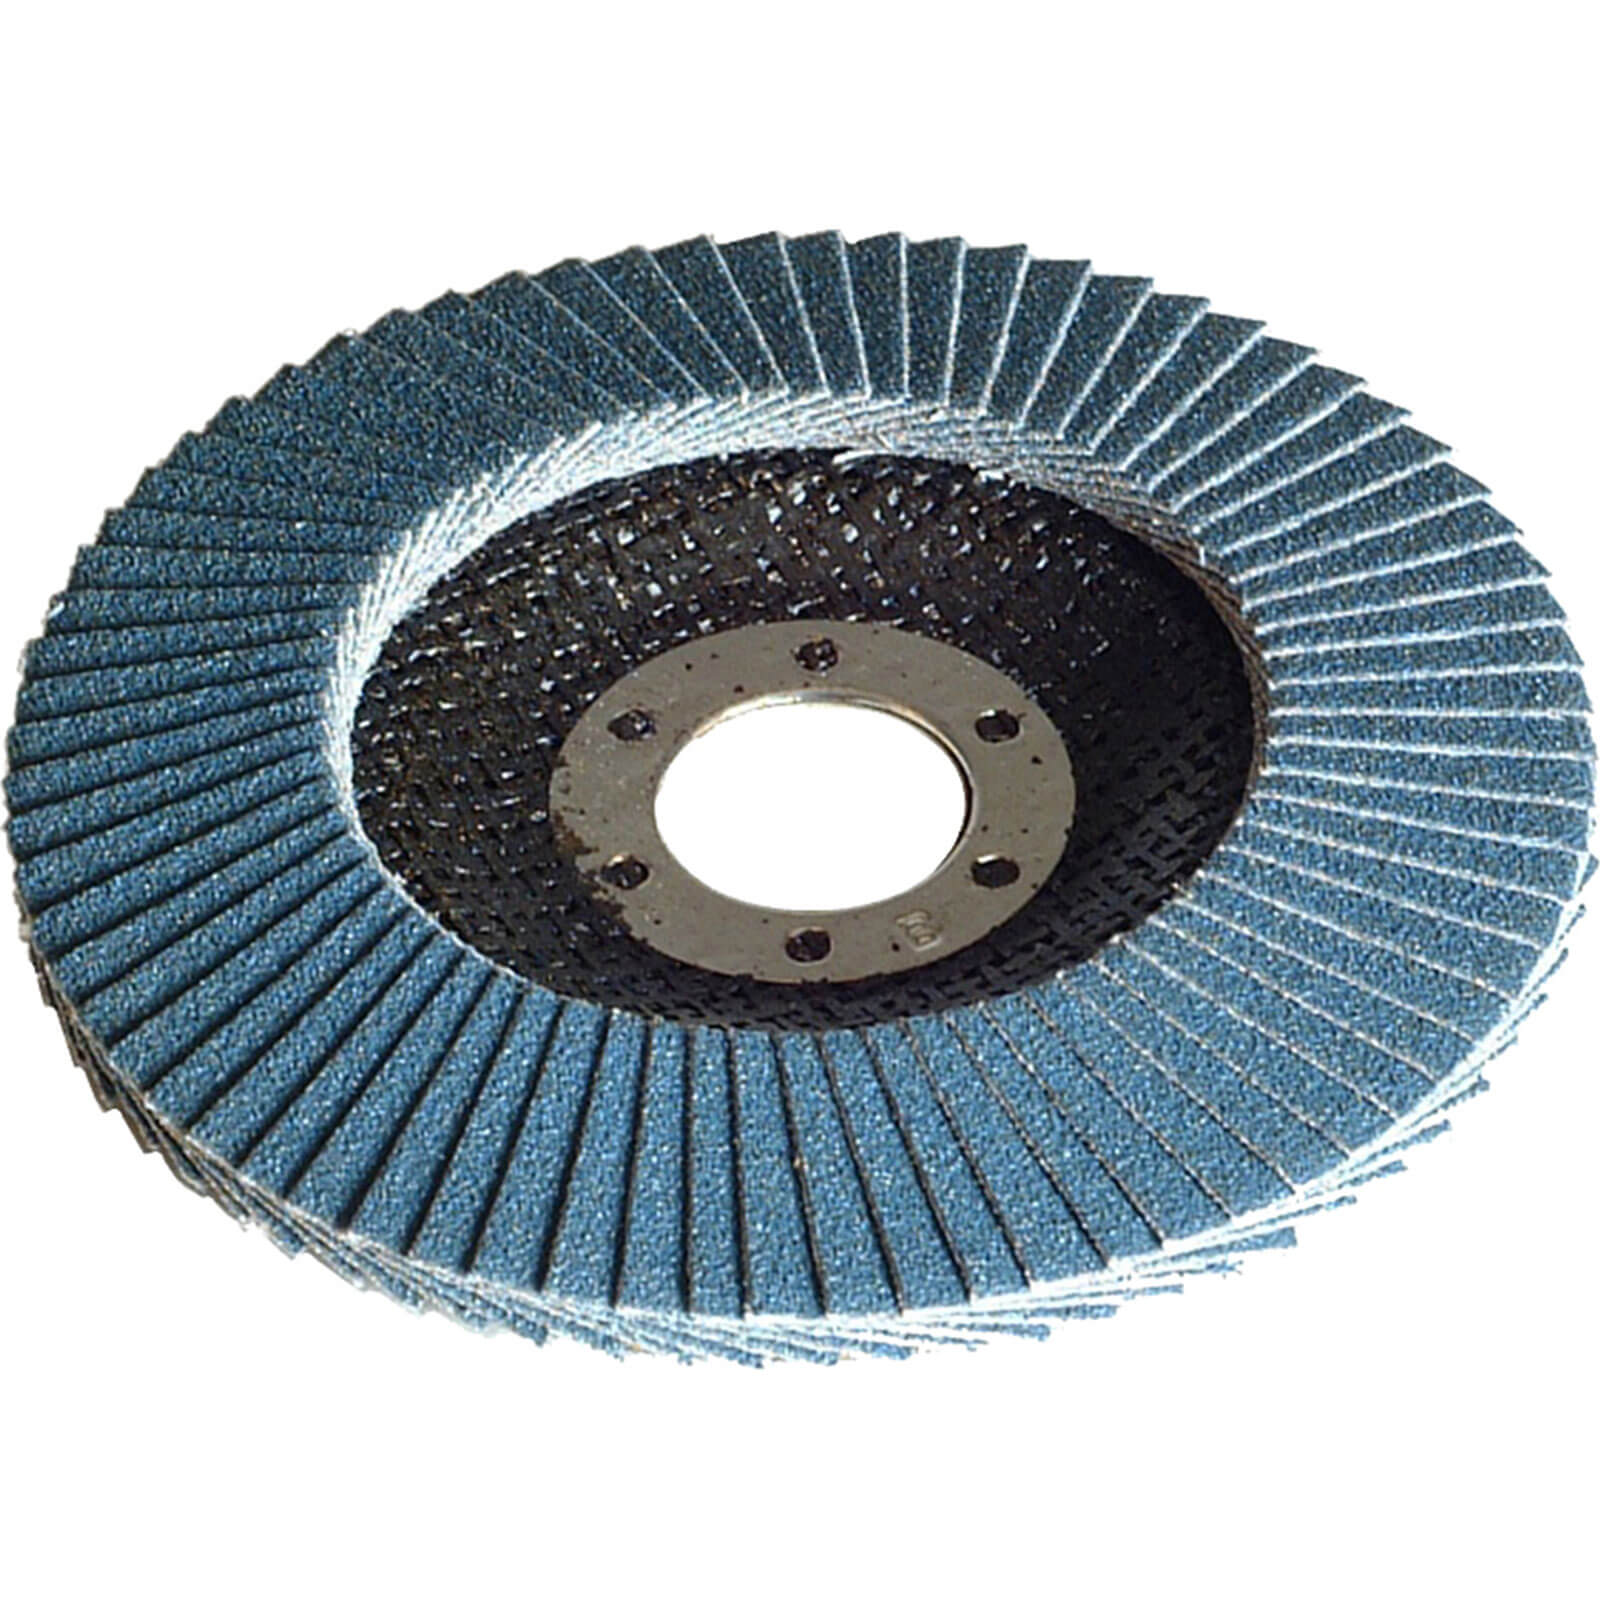 Image of Faithfull Zirconium Abrasive Flap Disc 100mm Coarse